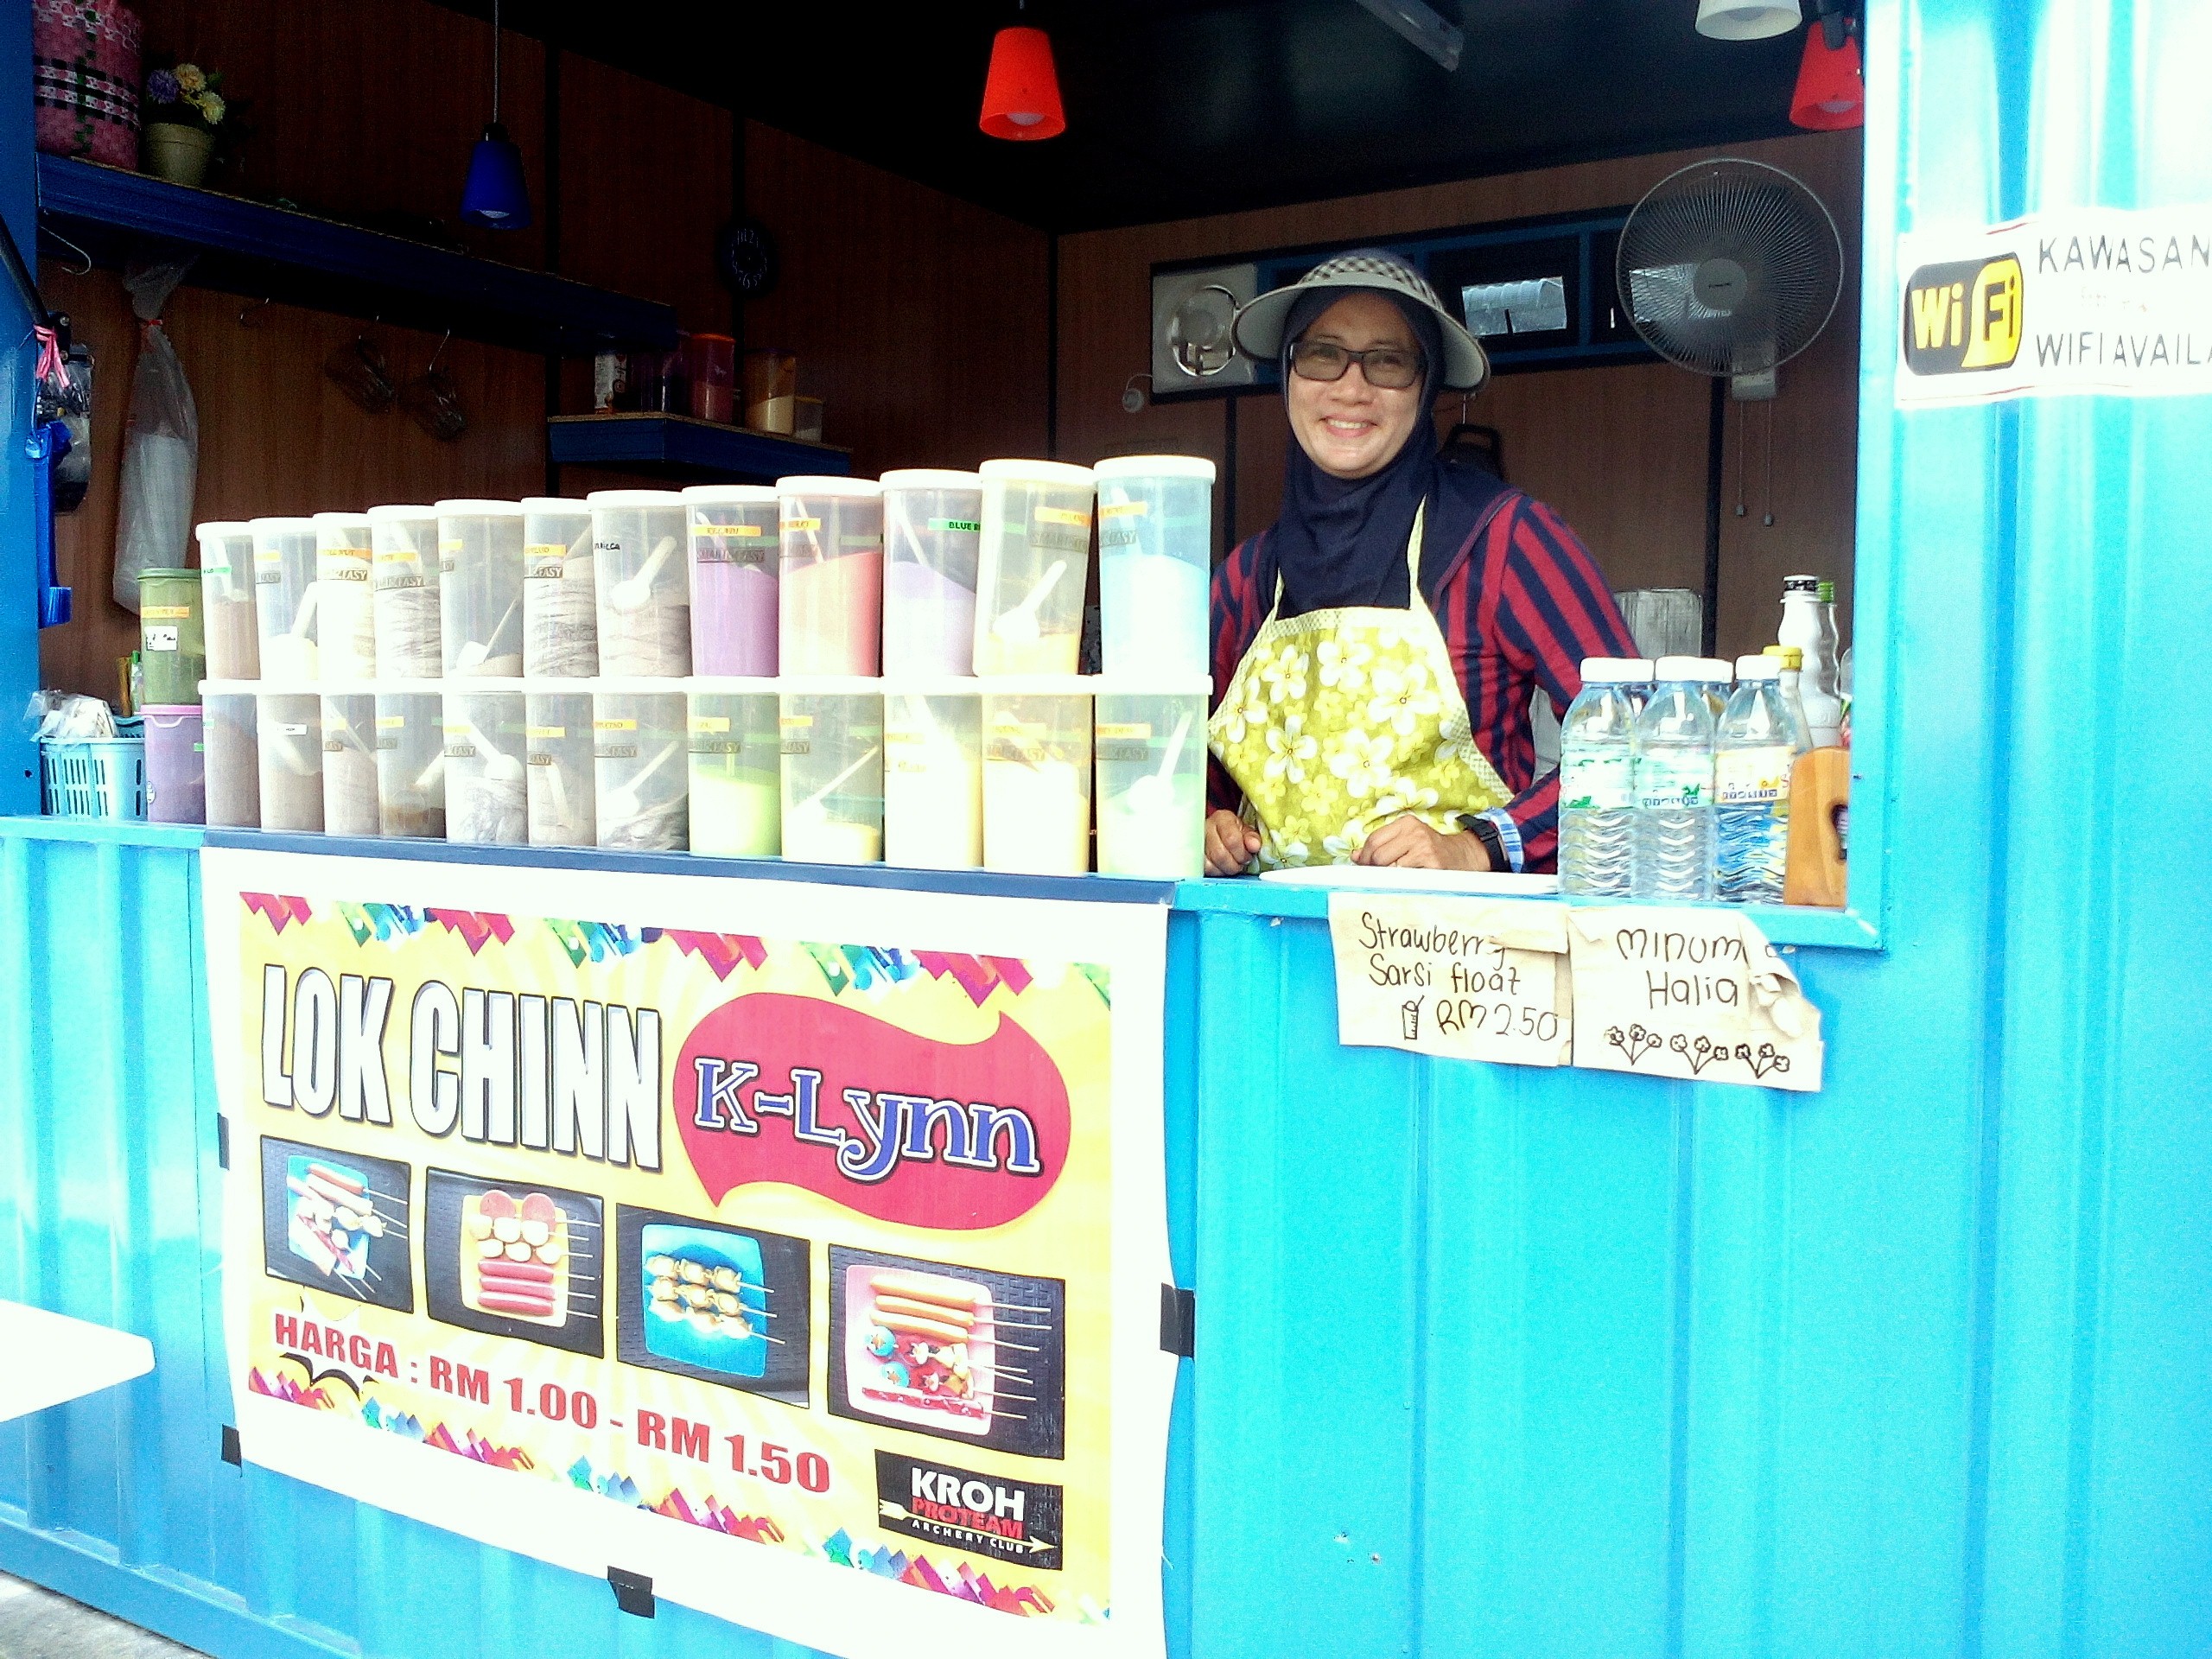 Inspirasi Berjaya: Lok Chinn K-Lynn pilihan ramai, Adlin perkenal makanan dari Thailand